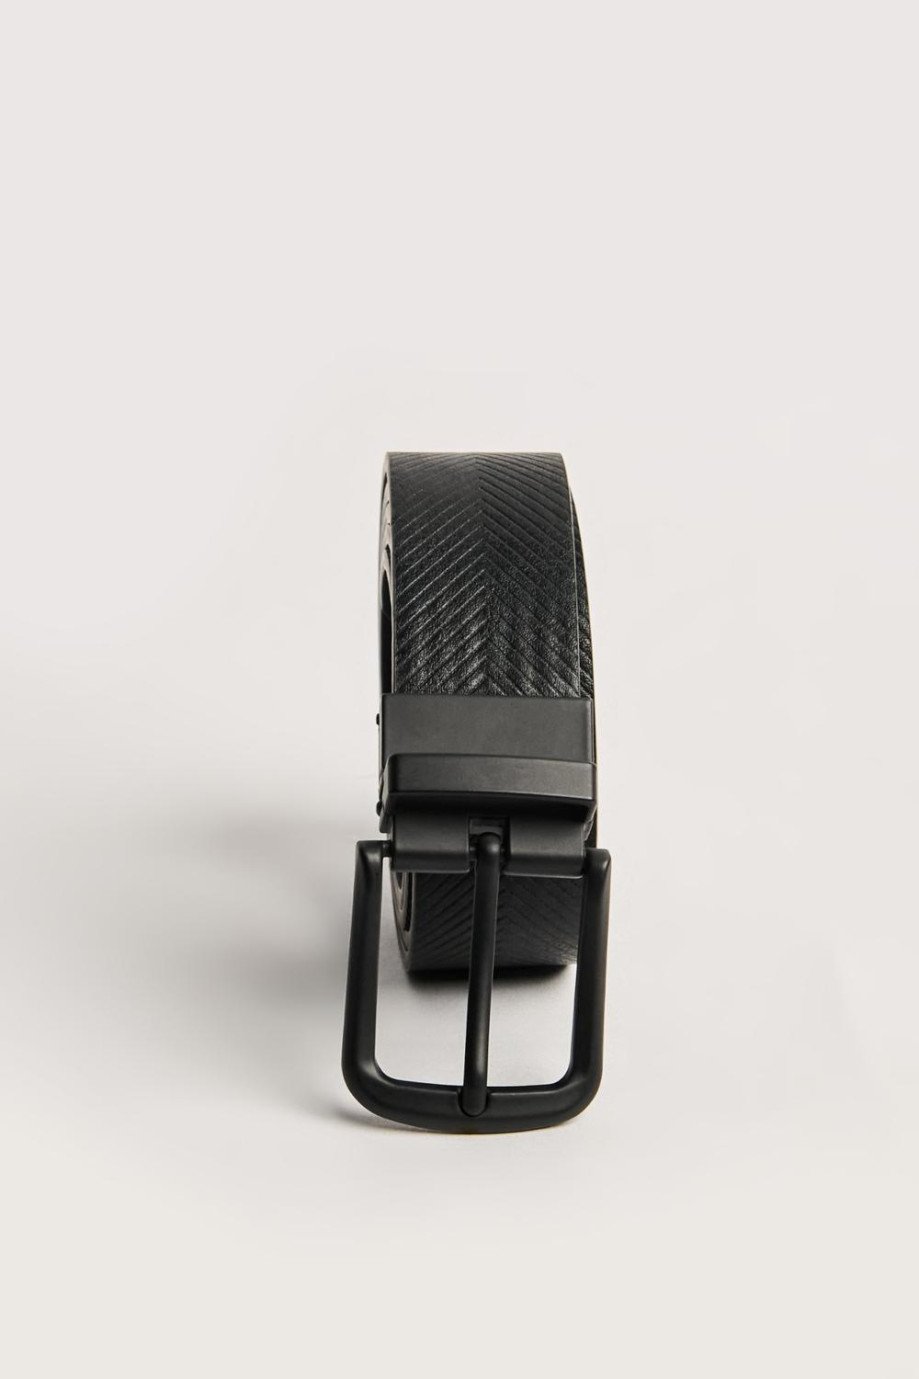 Cinturón reversible negro con hebilla cuadrada y texturas